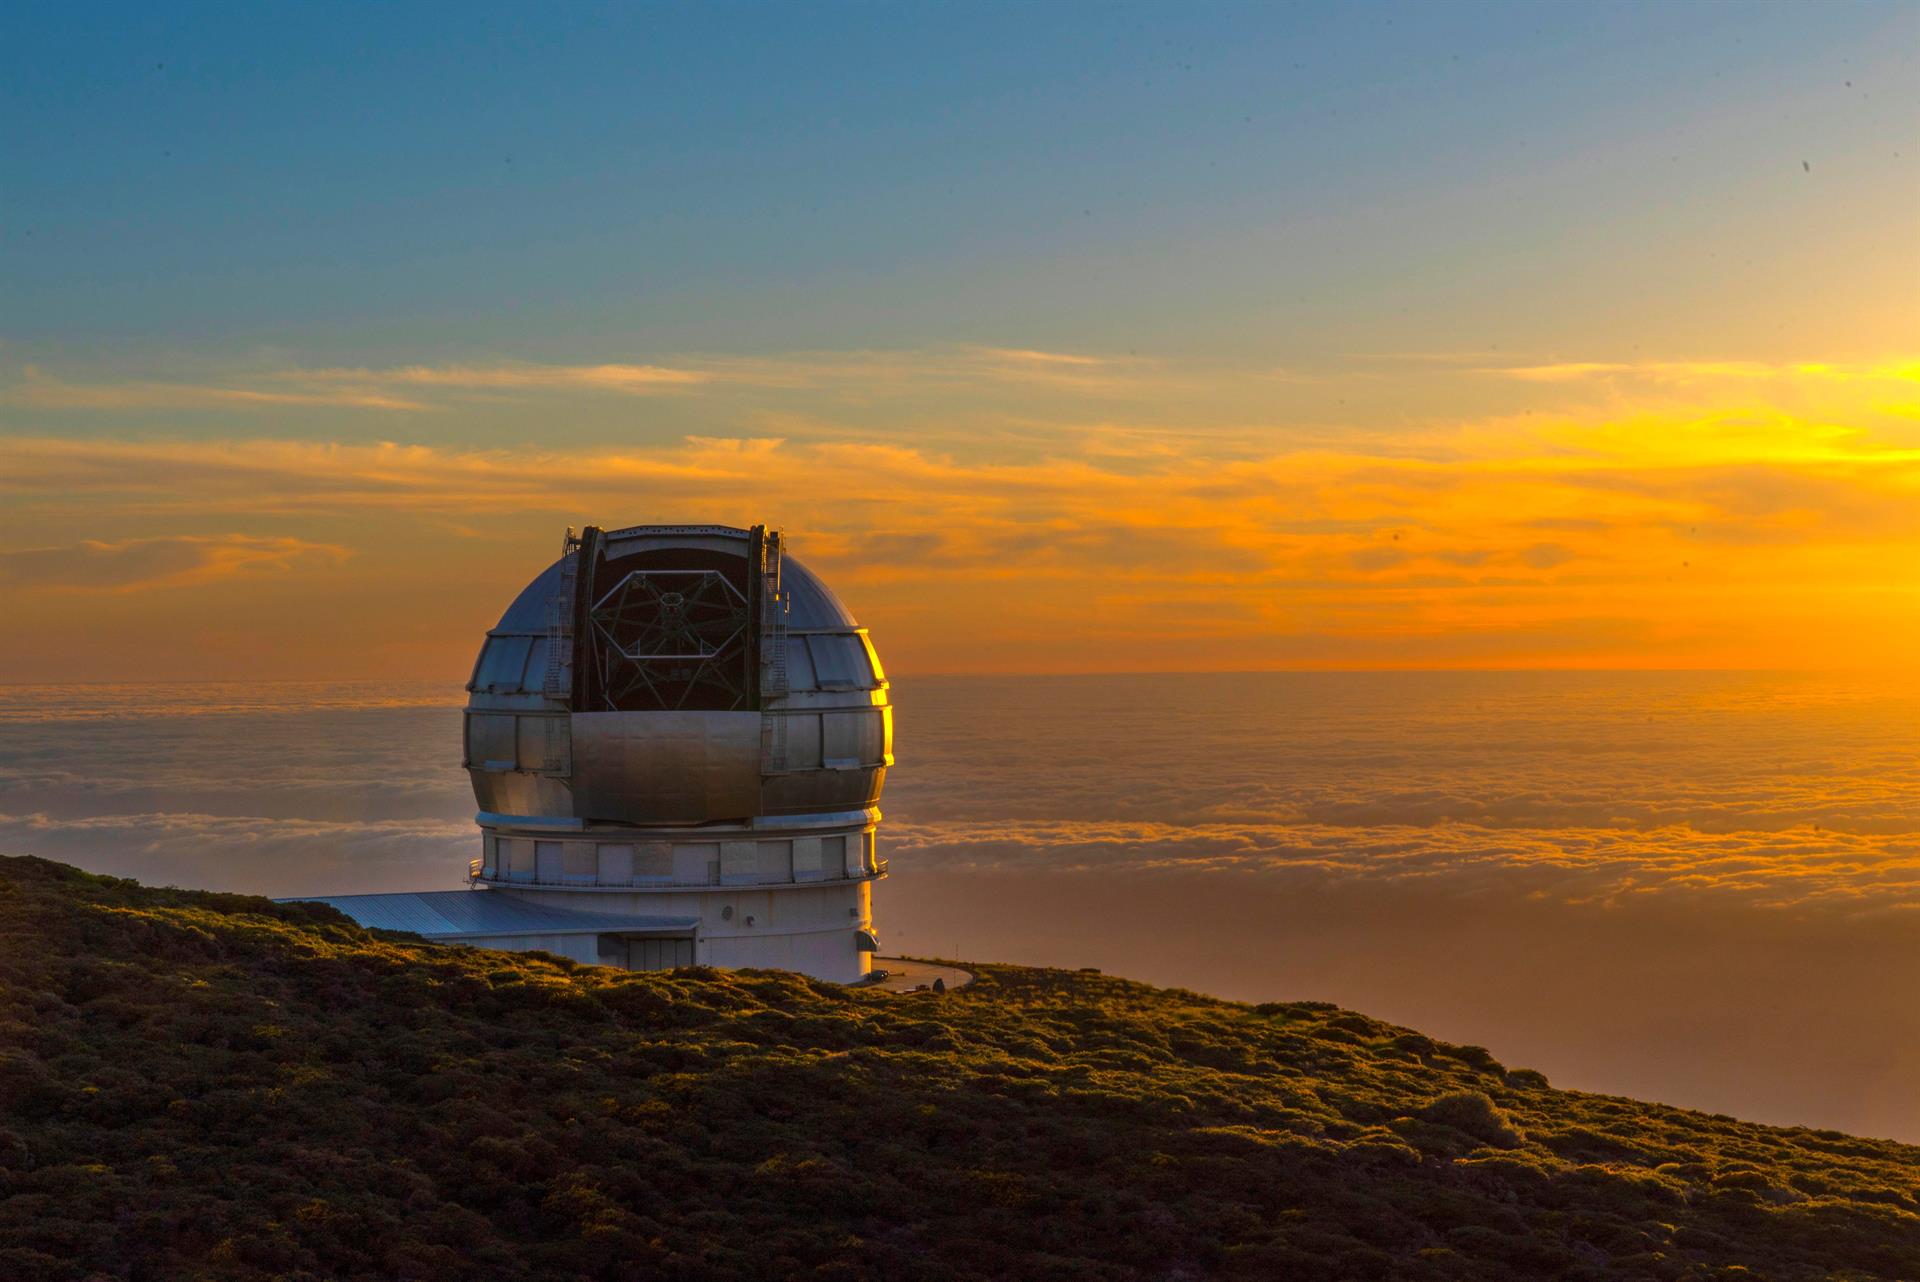 Imagen de archivo del mayor telescopio del mundo, el Grantecan, en Santa Cruz de Tenerife.EFE/ Miguel Calero